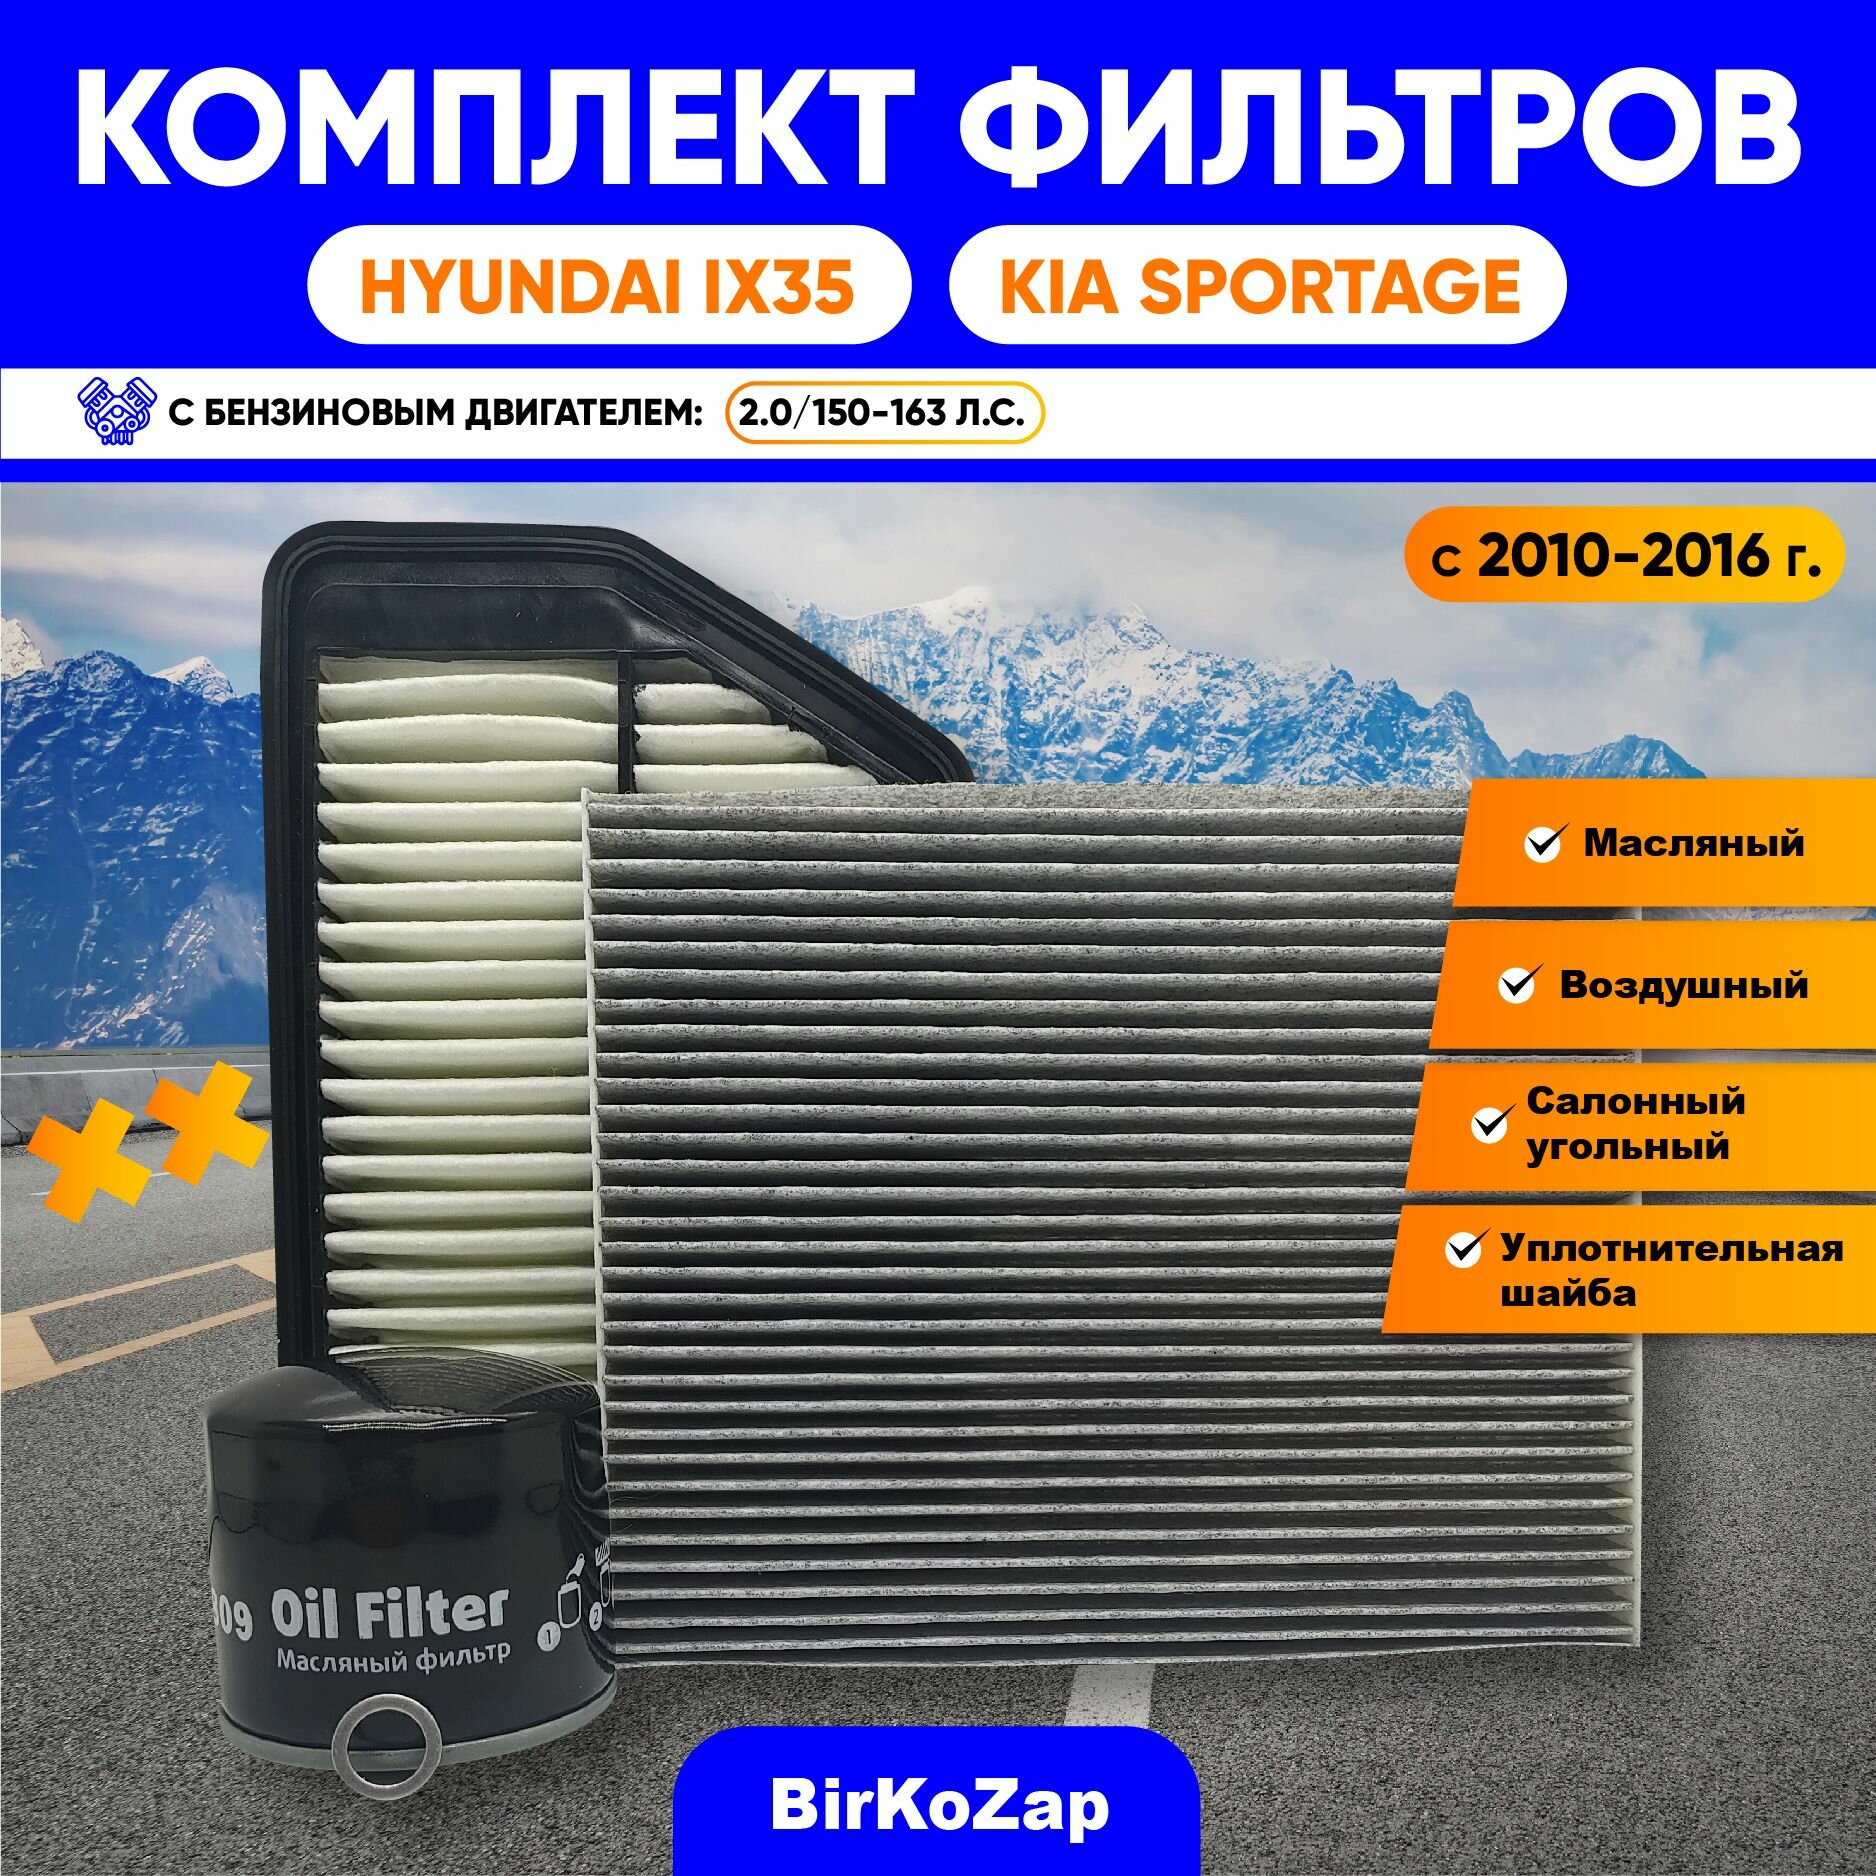 Комплект фильтров Hyundai IX35 и KIA Sportage с 2010-2015 г. (2.0. 150 -163 л. с.) (фильтр масляный+воздушный+салонный угольный+прокладка под сливную пробку)